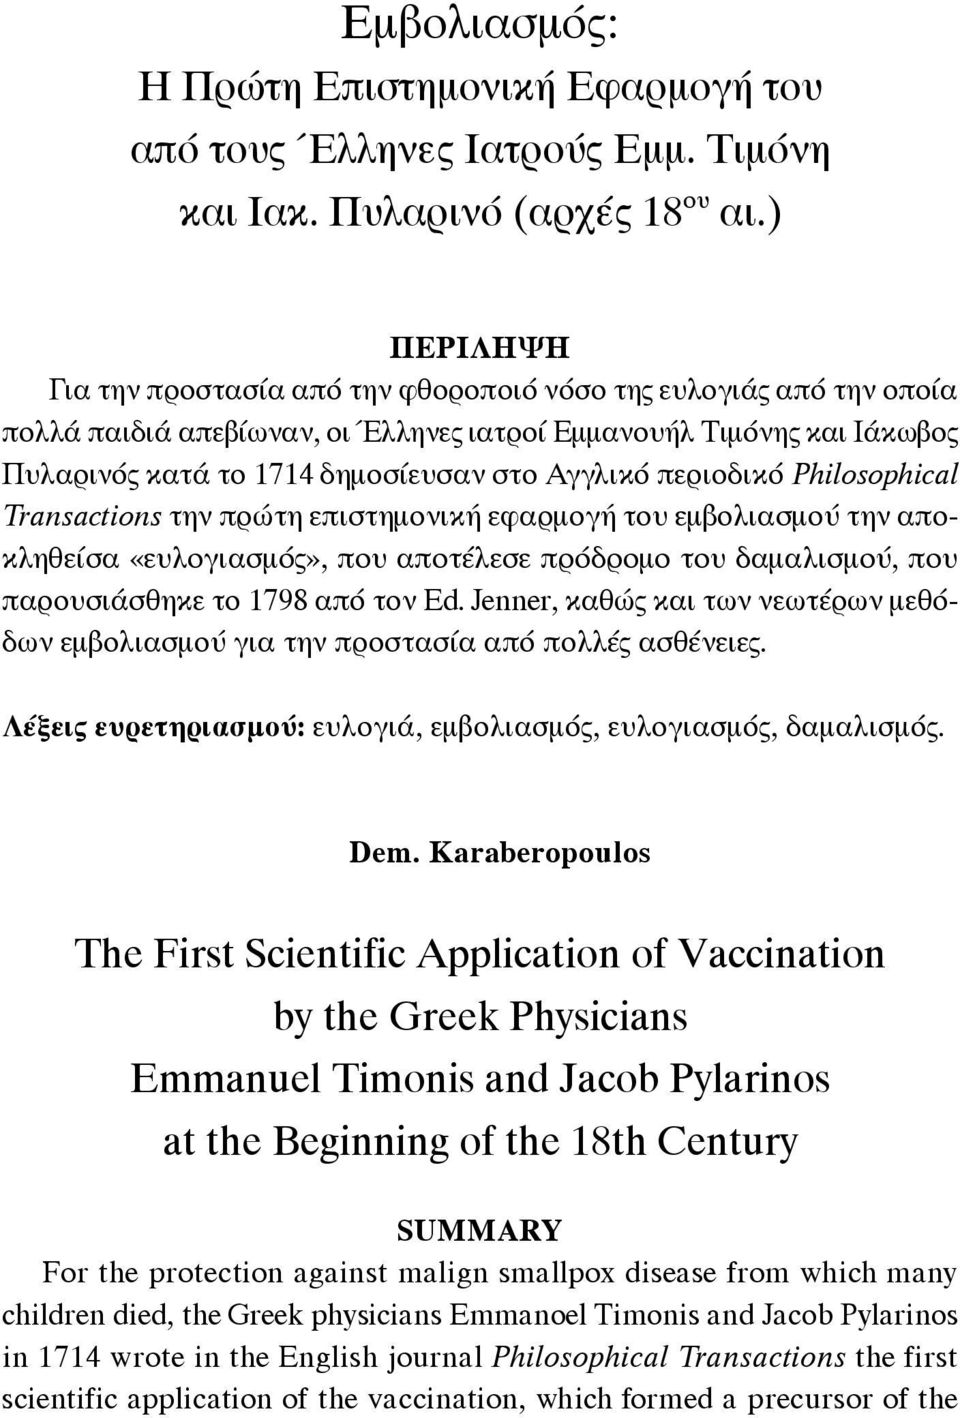 περιοδικό Philosophical Transactions την πρώτη επιστημονική εφαρμογή του εμβολιασμού την αποκληθείσα «ευλογιασμός», που αποτέλεσε πρόδρομο του δαμαλισμού, που παρουσιάσθηκε το 1798 από τον Ed.